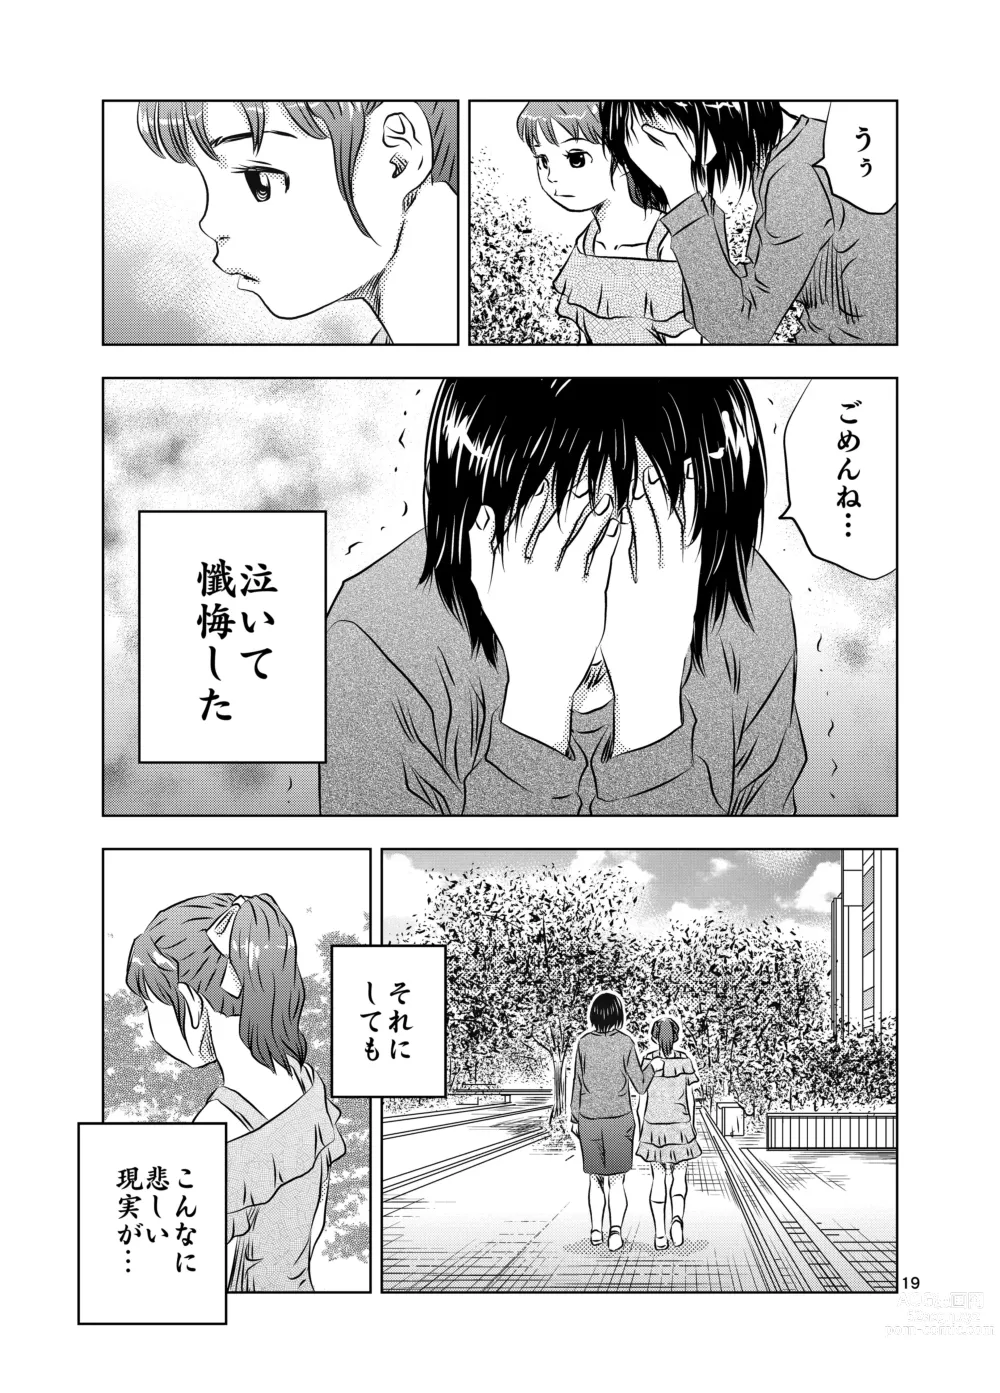 Page 19 of doujinshi Itoko no Aoi-chan